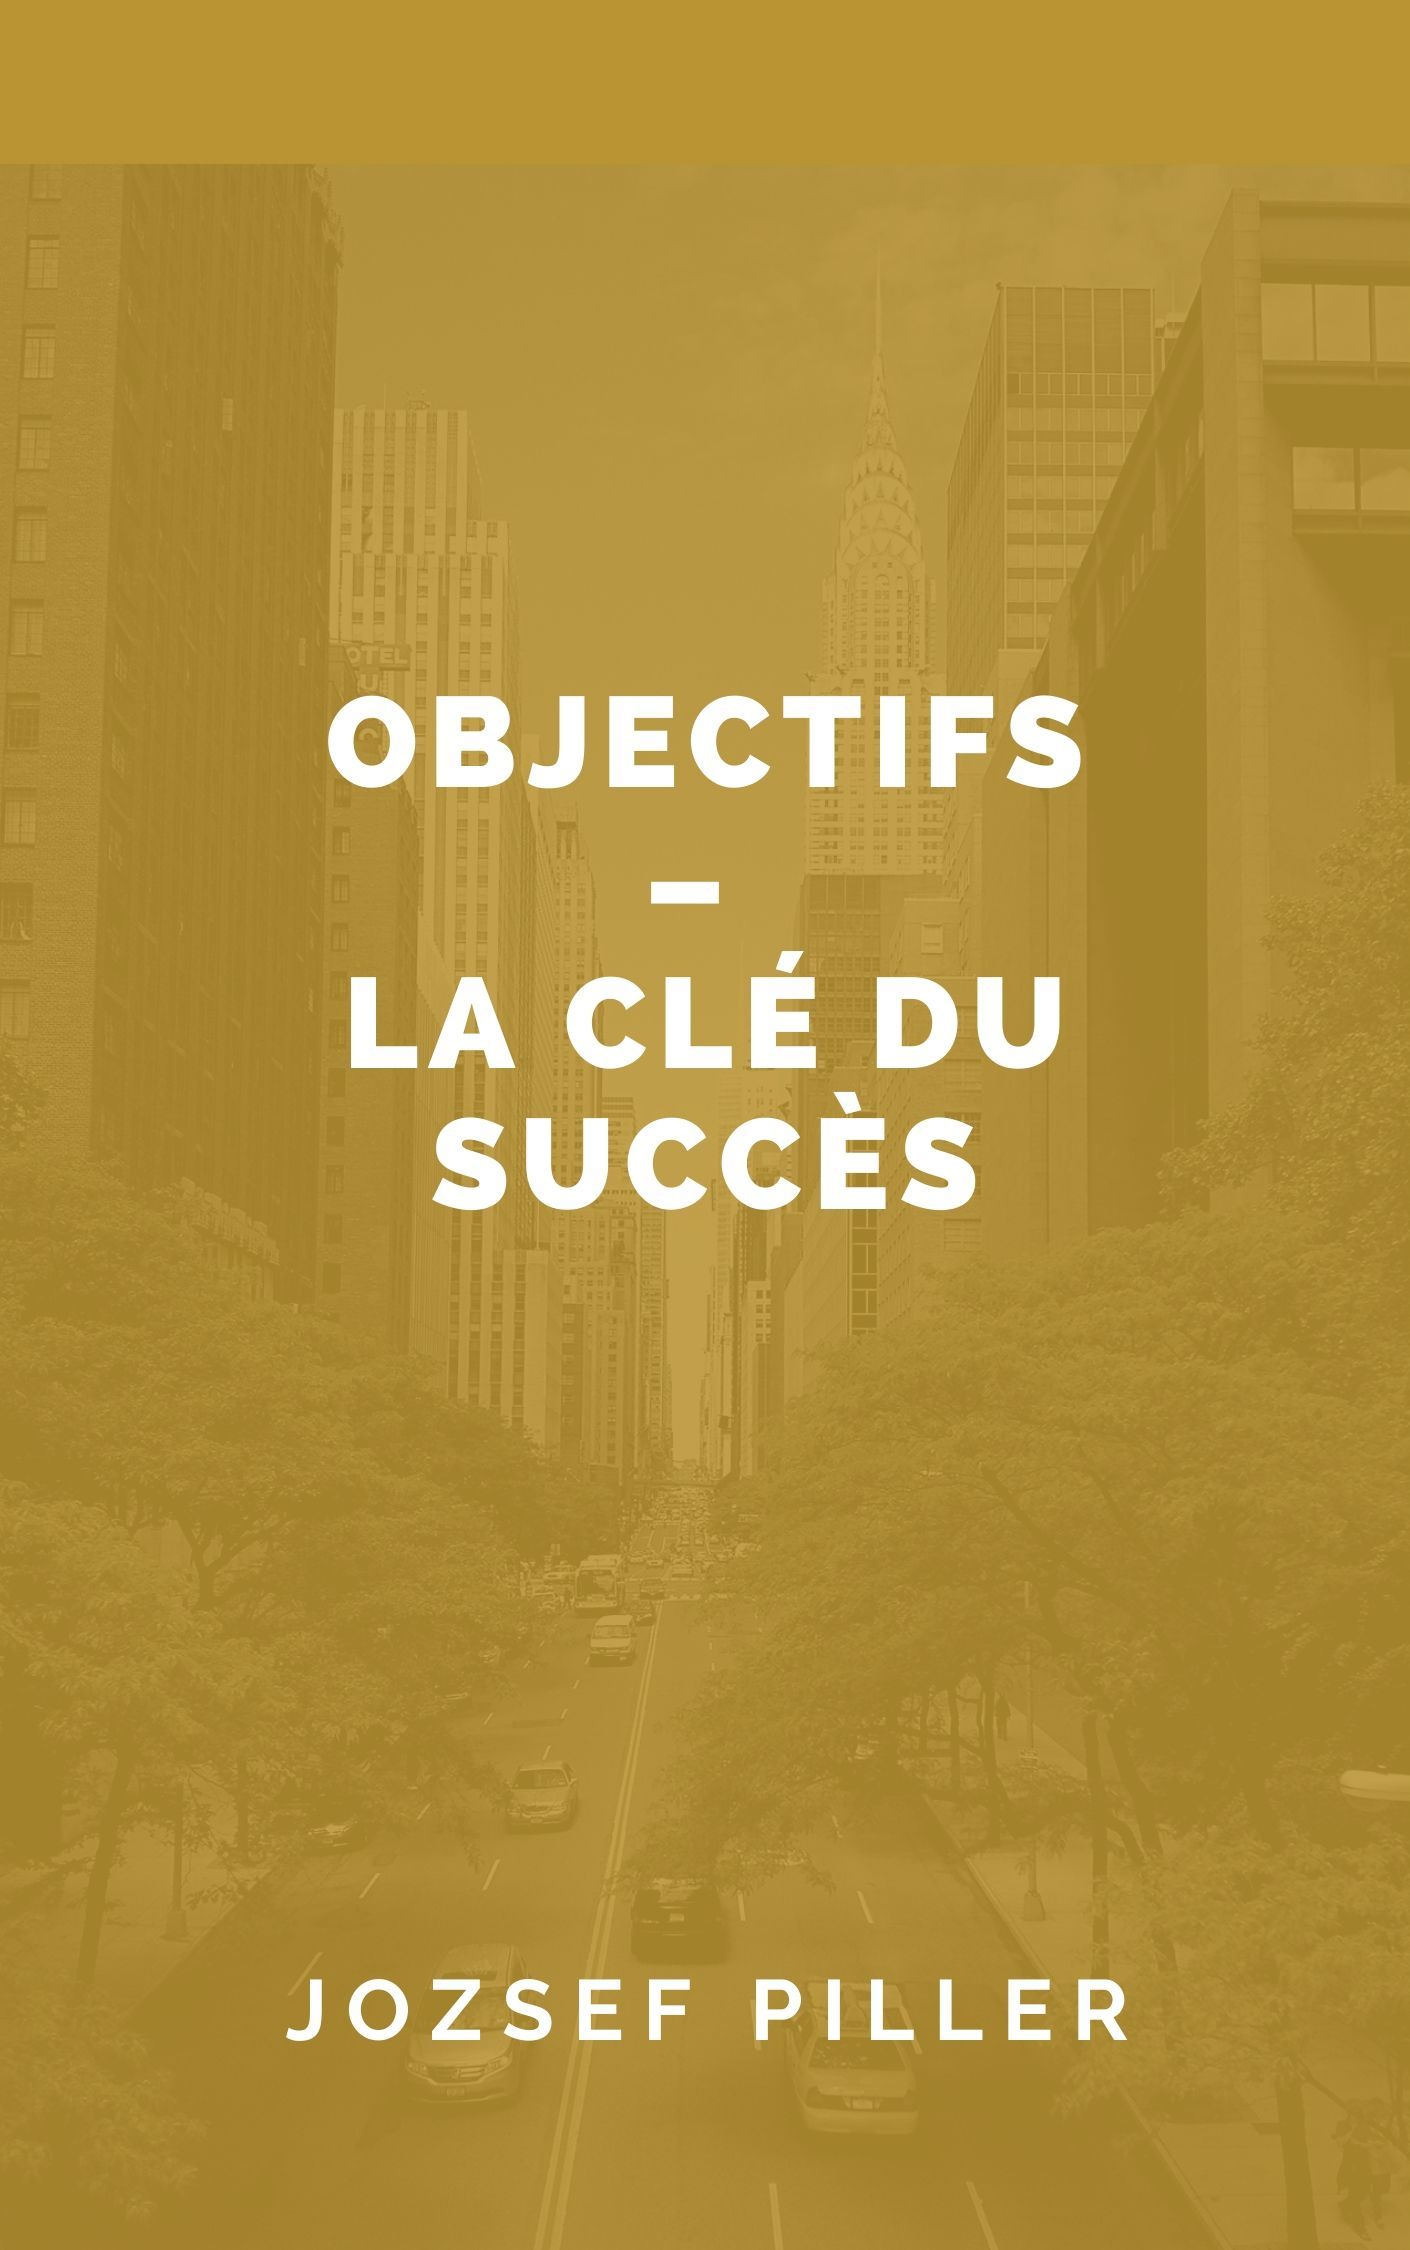 Objectifs - La clé du succès, eBook by Jozsef Piller